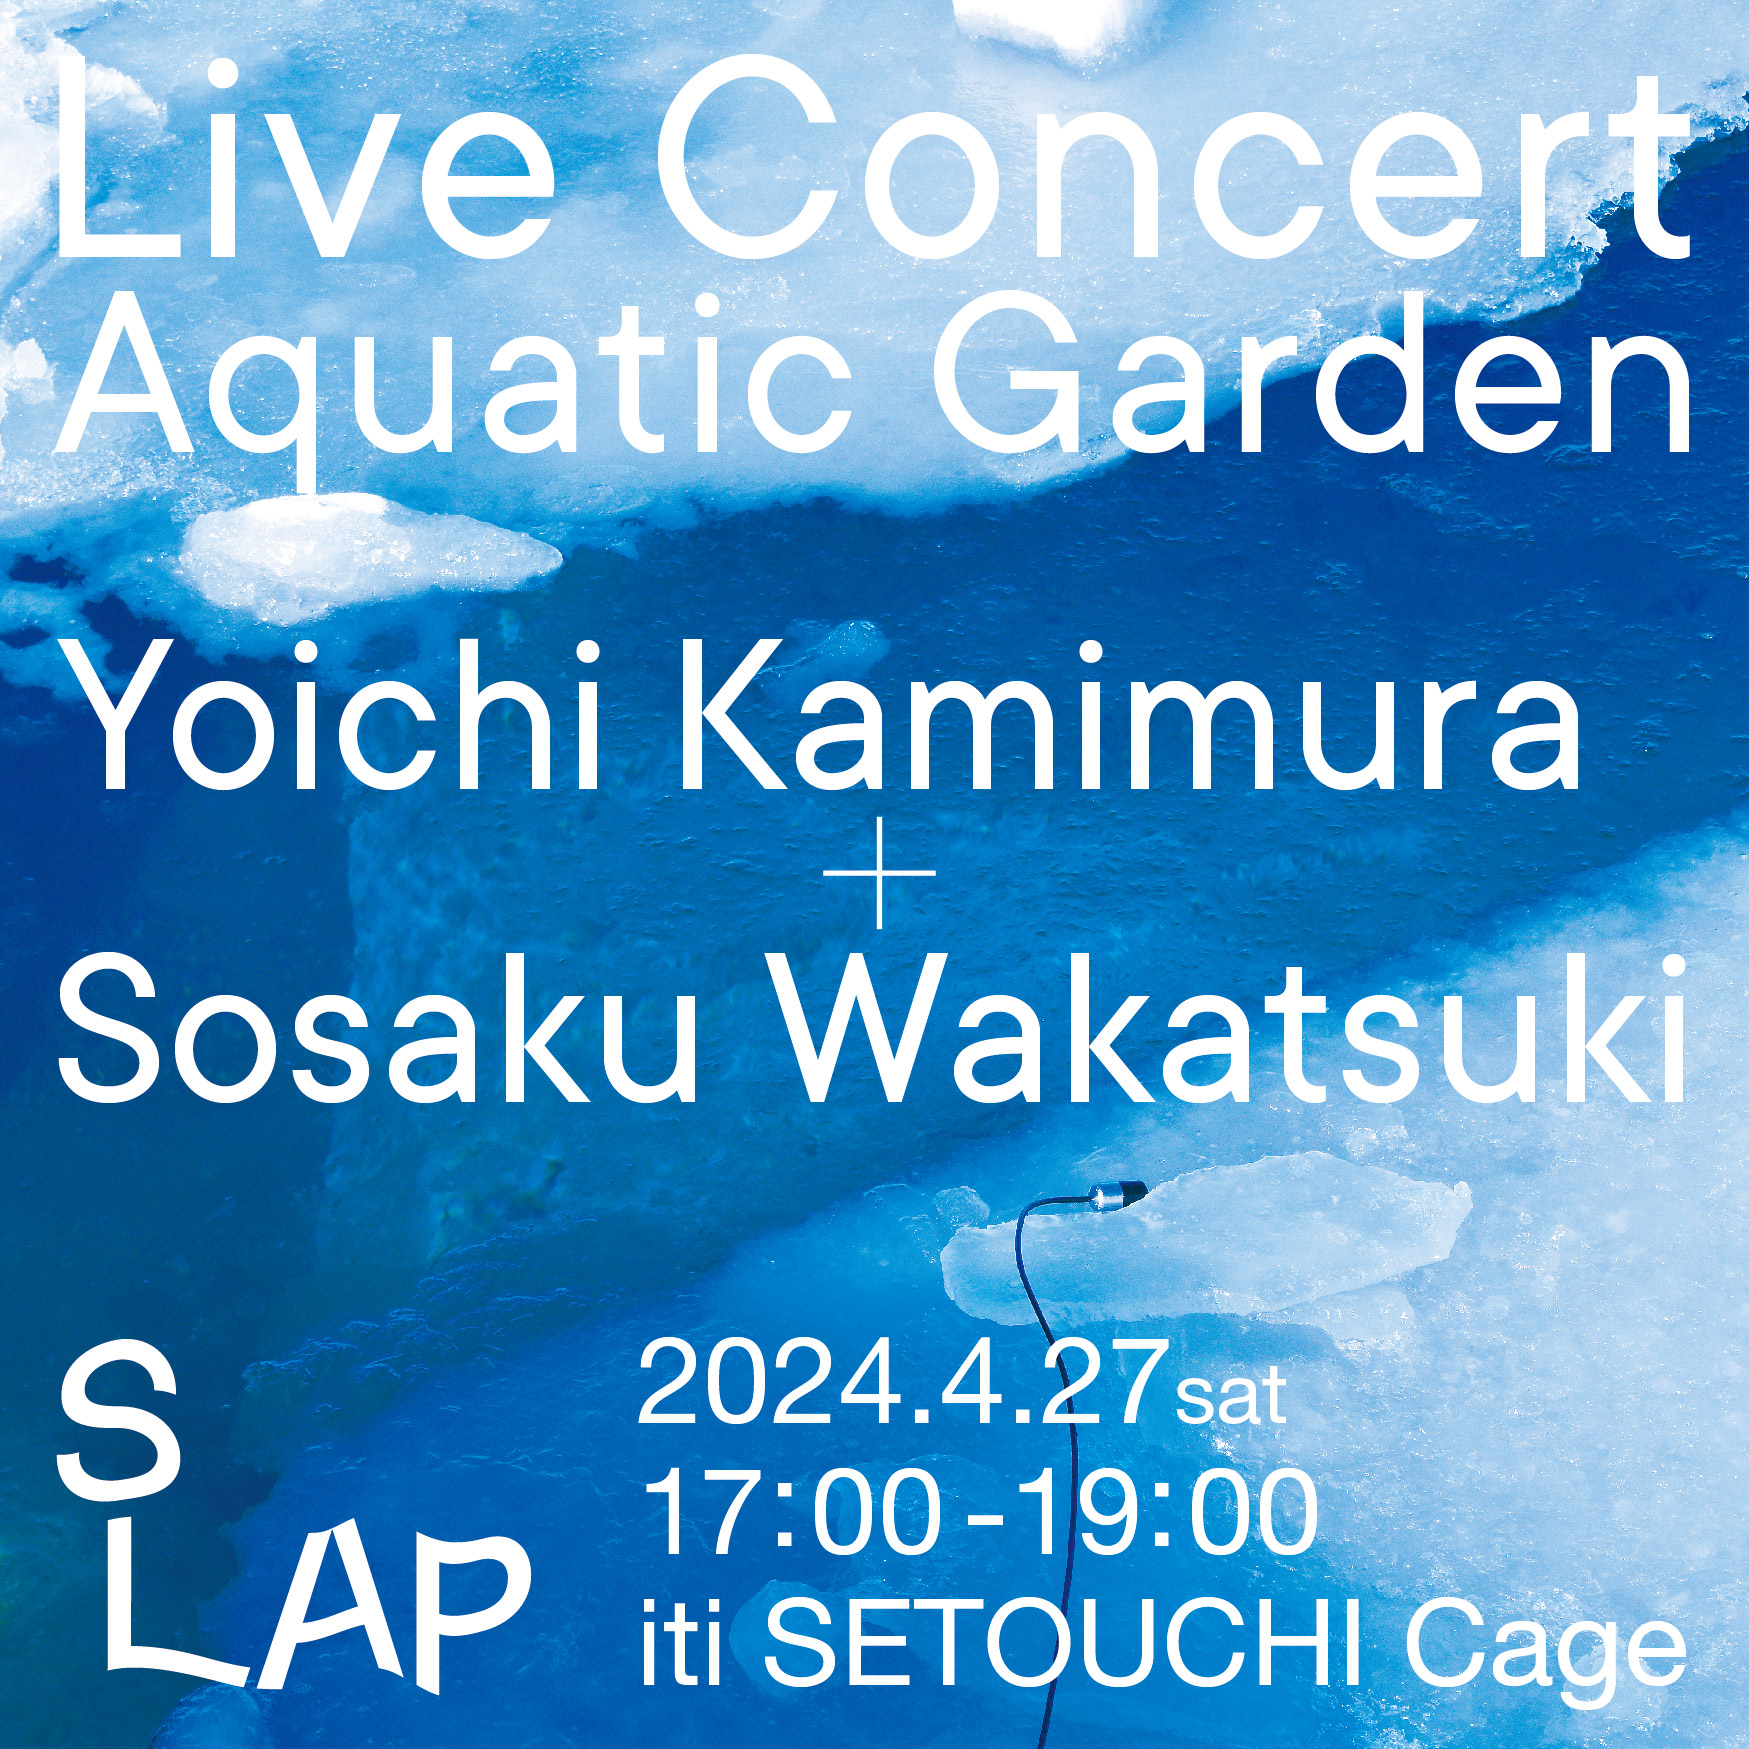 ライブ・コンサート「Aquatic Garden」